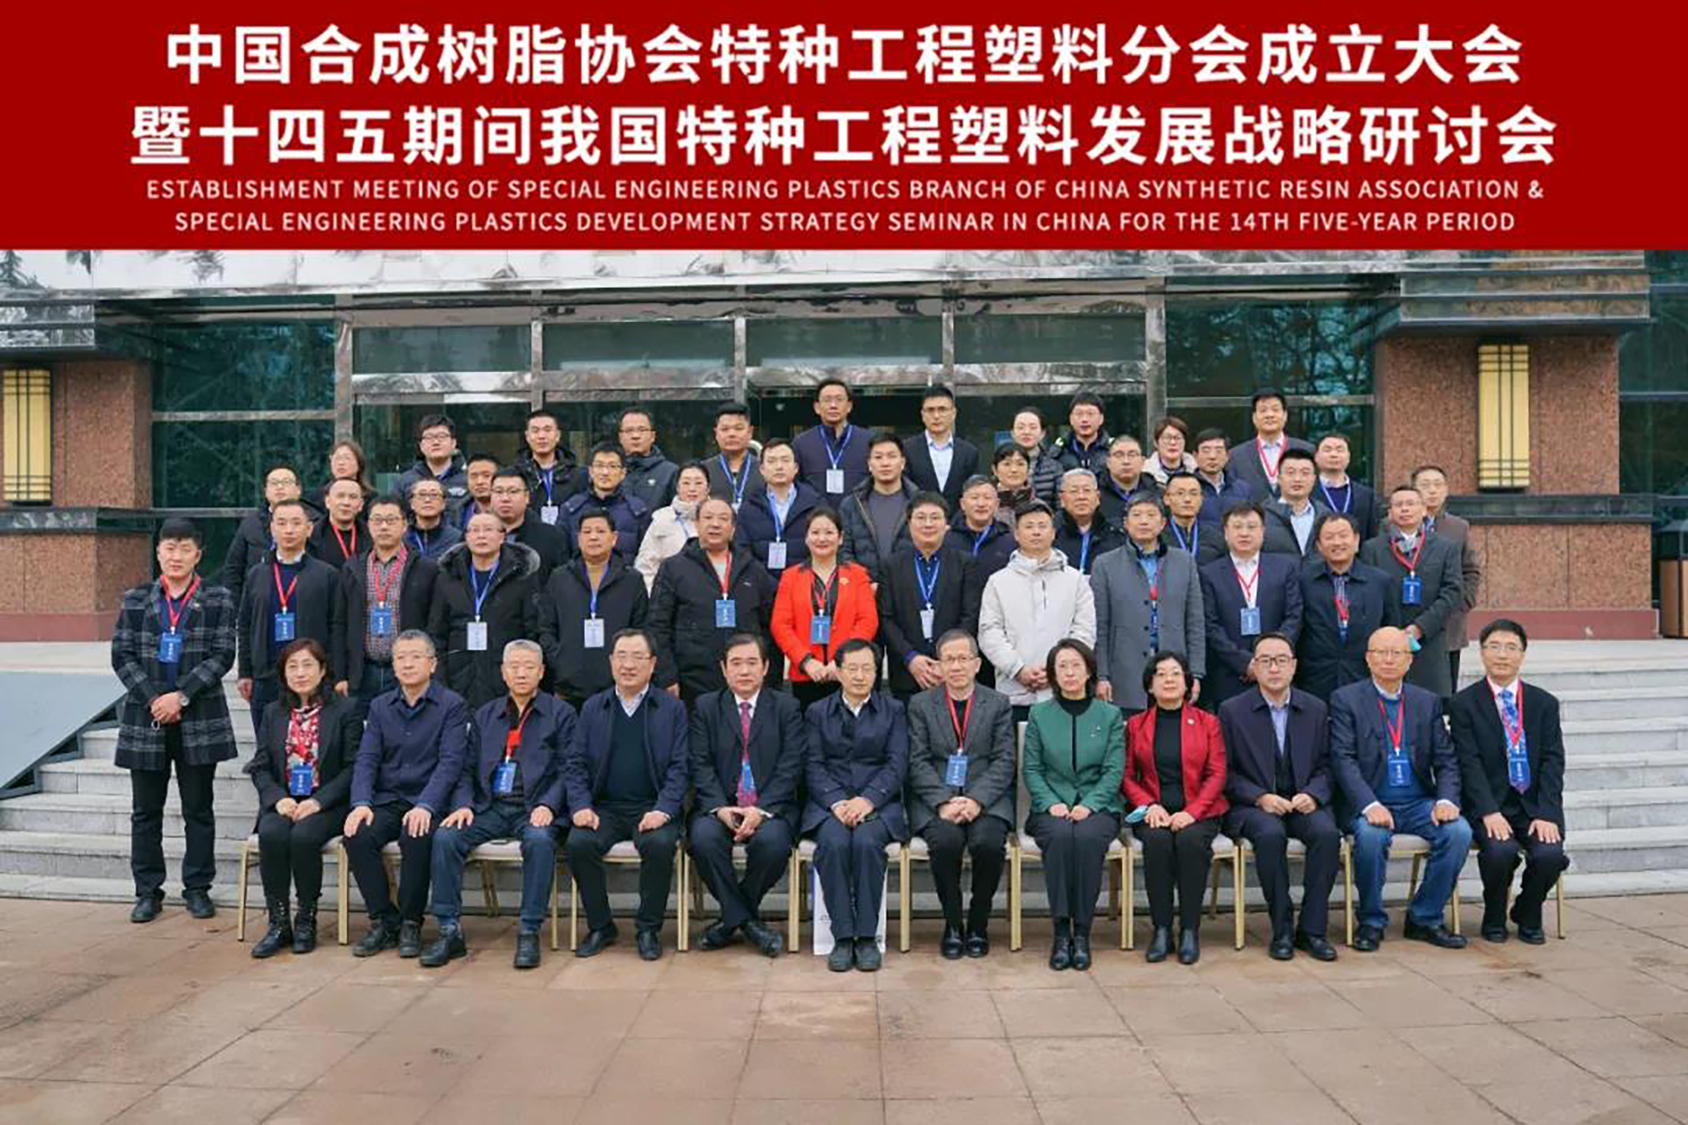 热烈庆祝中国合成树脂协会特种工程塑料分会成立大会成功召开 